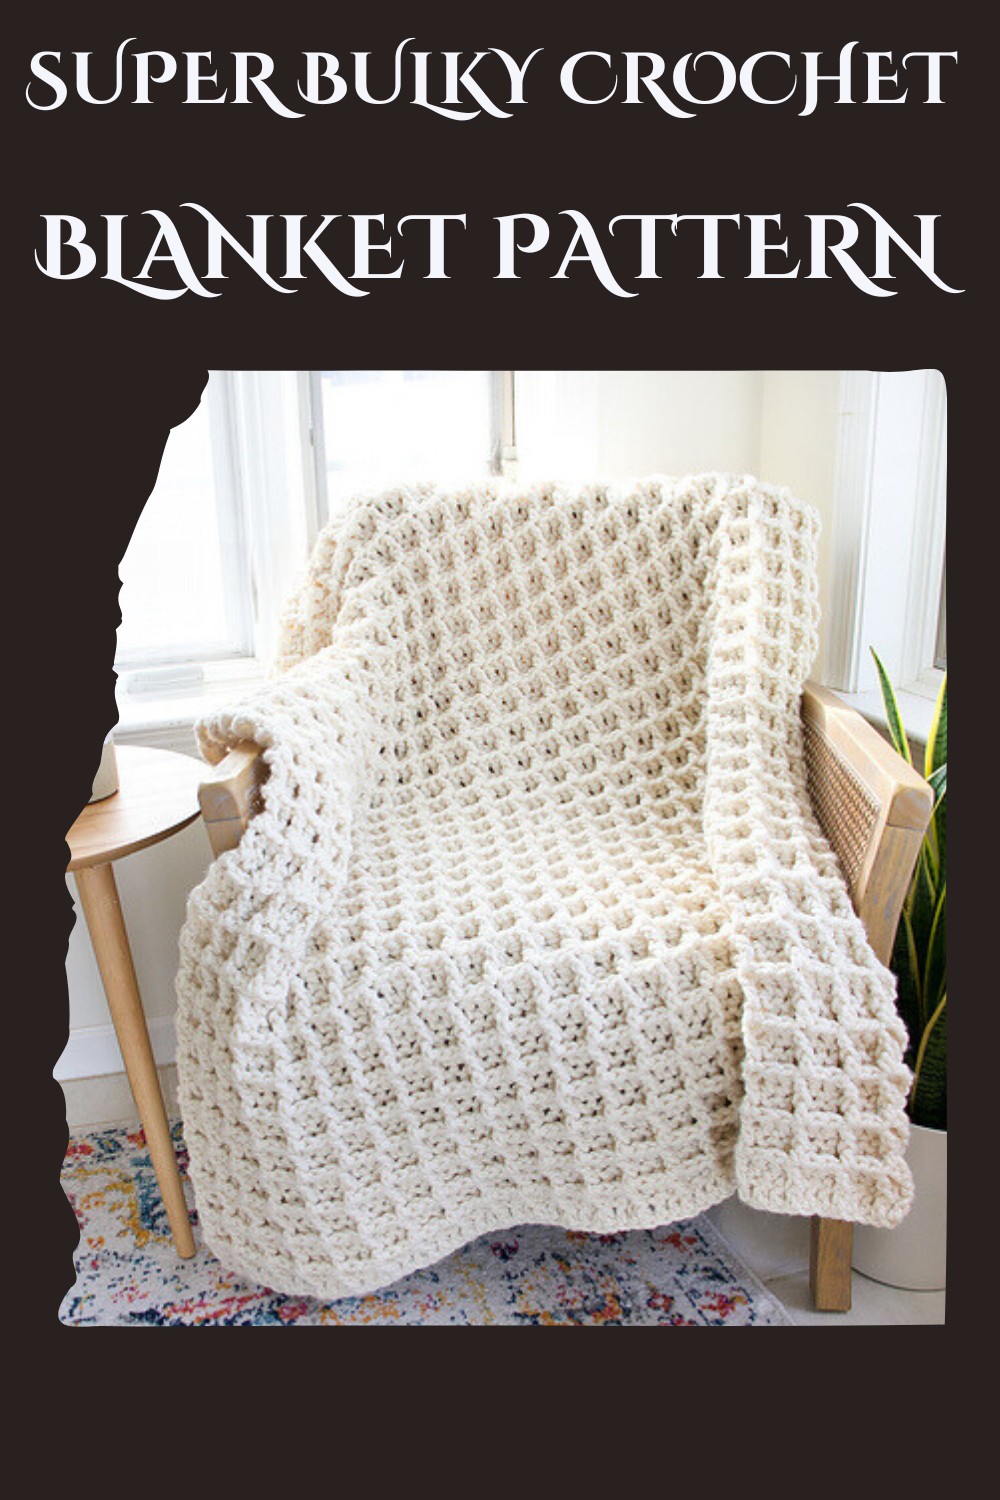 Super Bulky Crochet Blanket Pattern